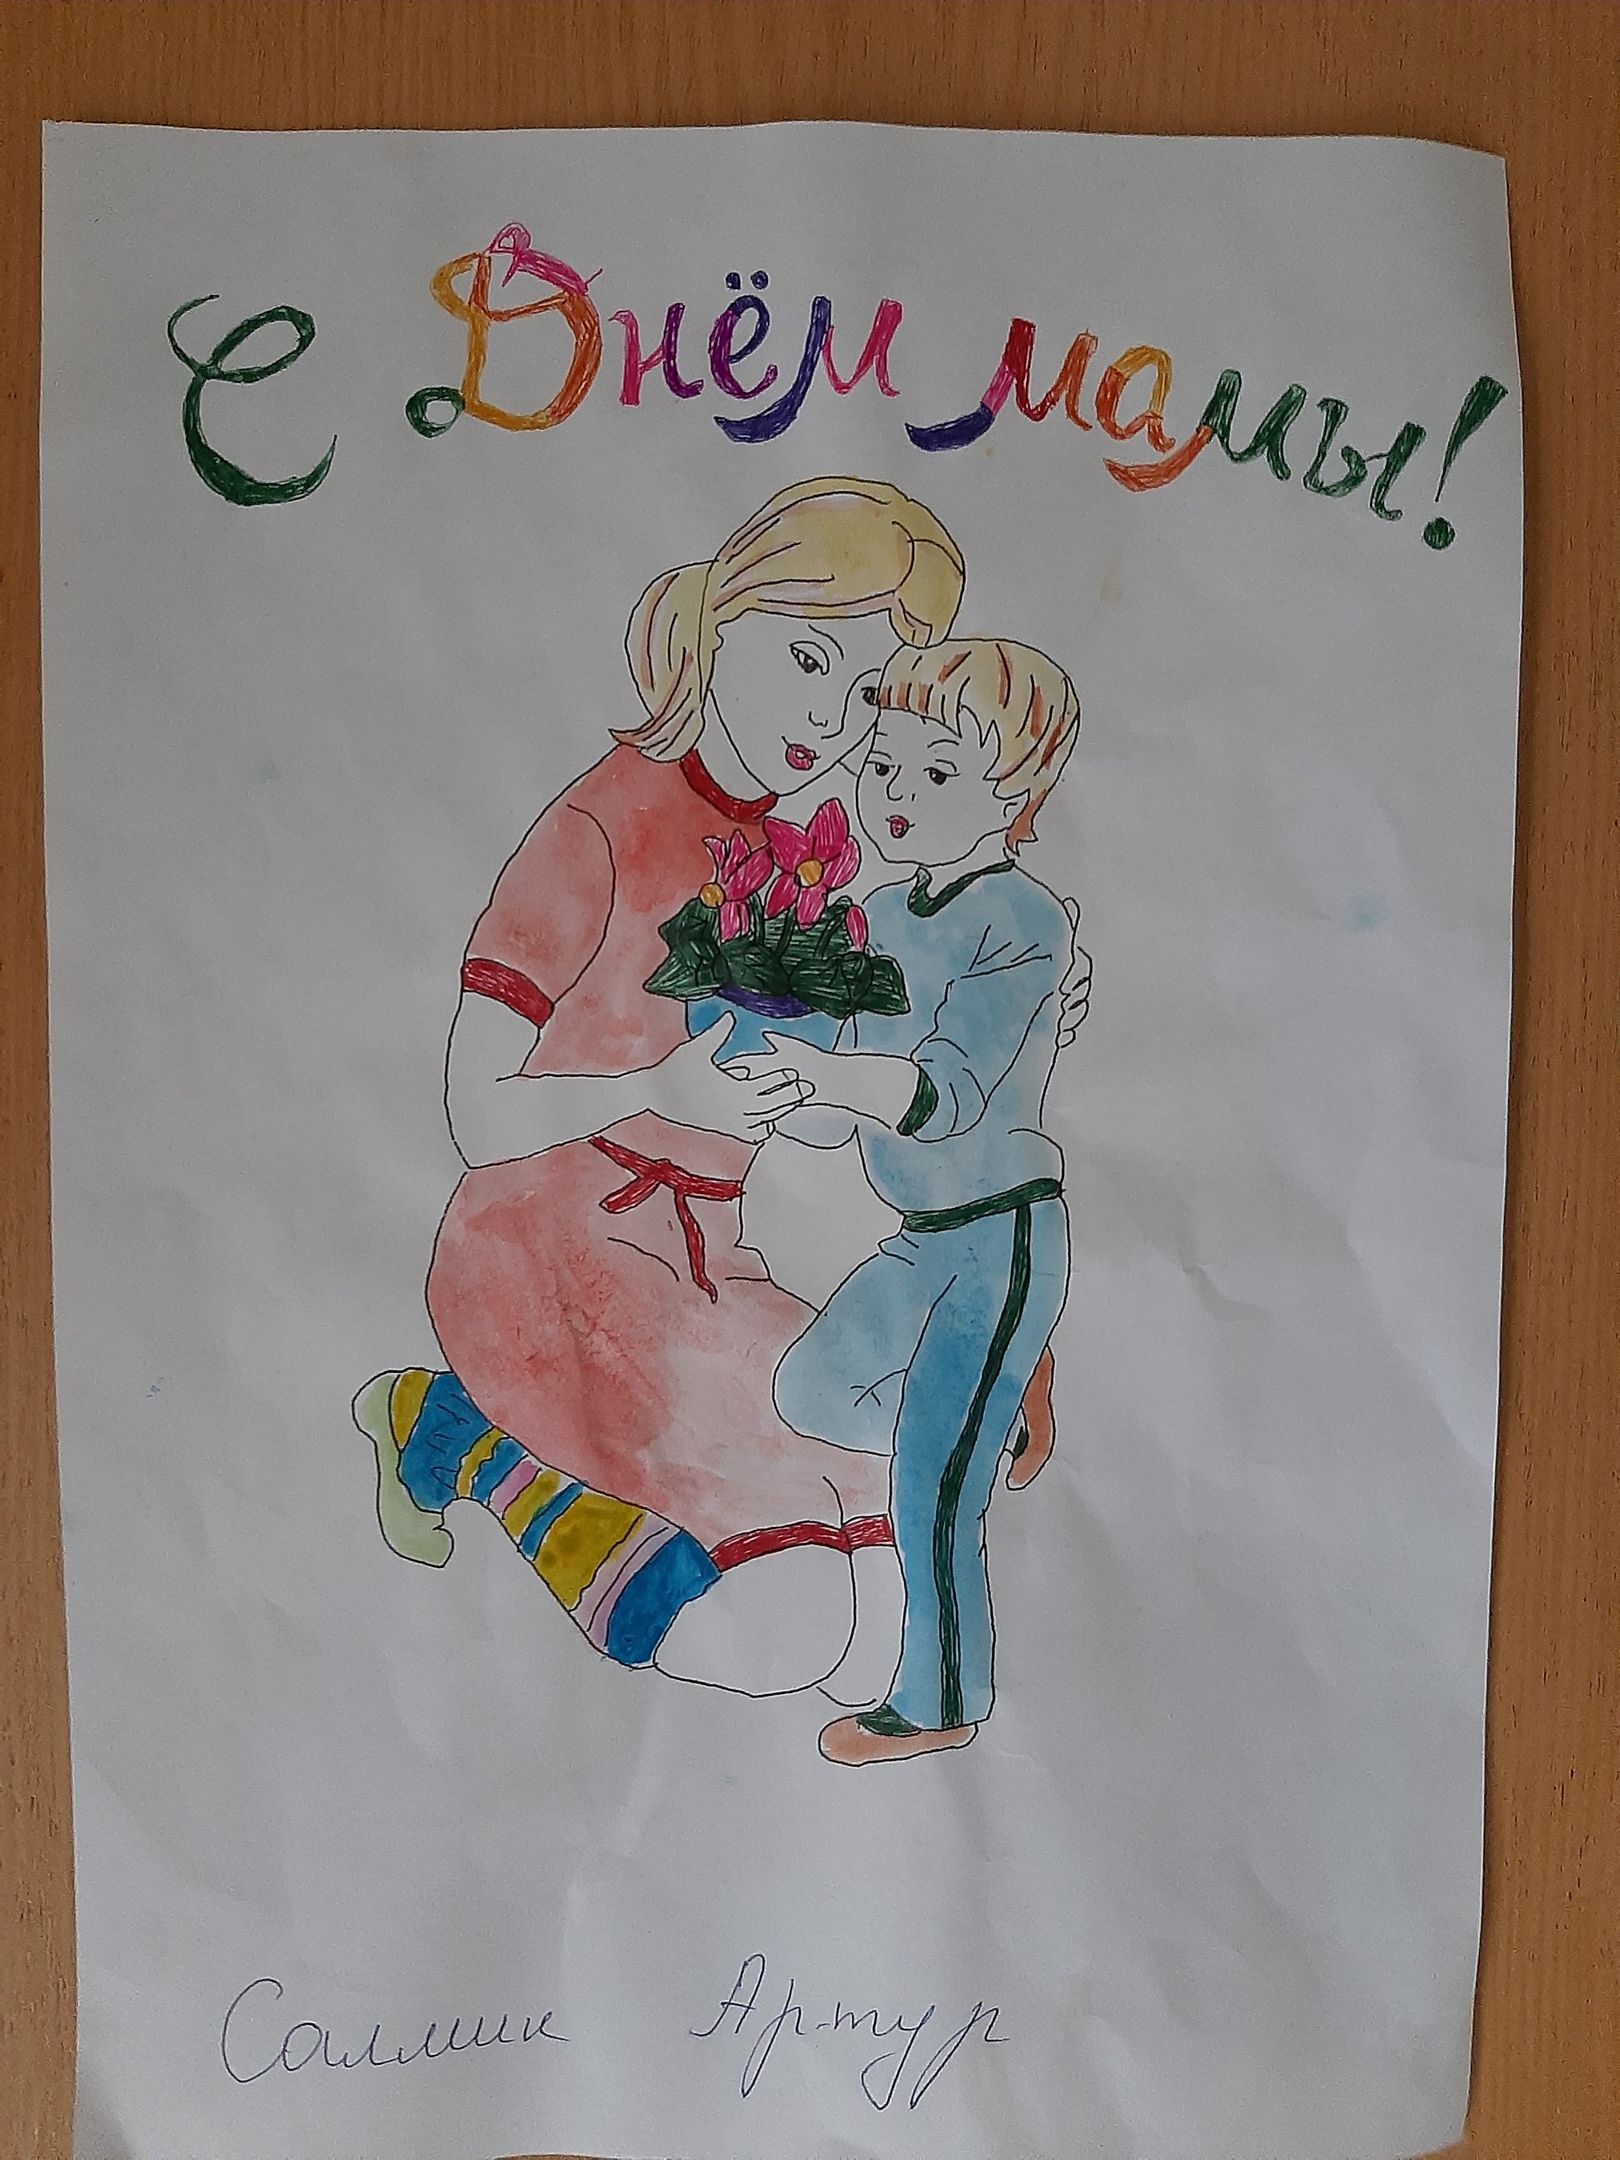 Детский сад "Ивушка" поздравляет всех мам с праздником